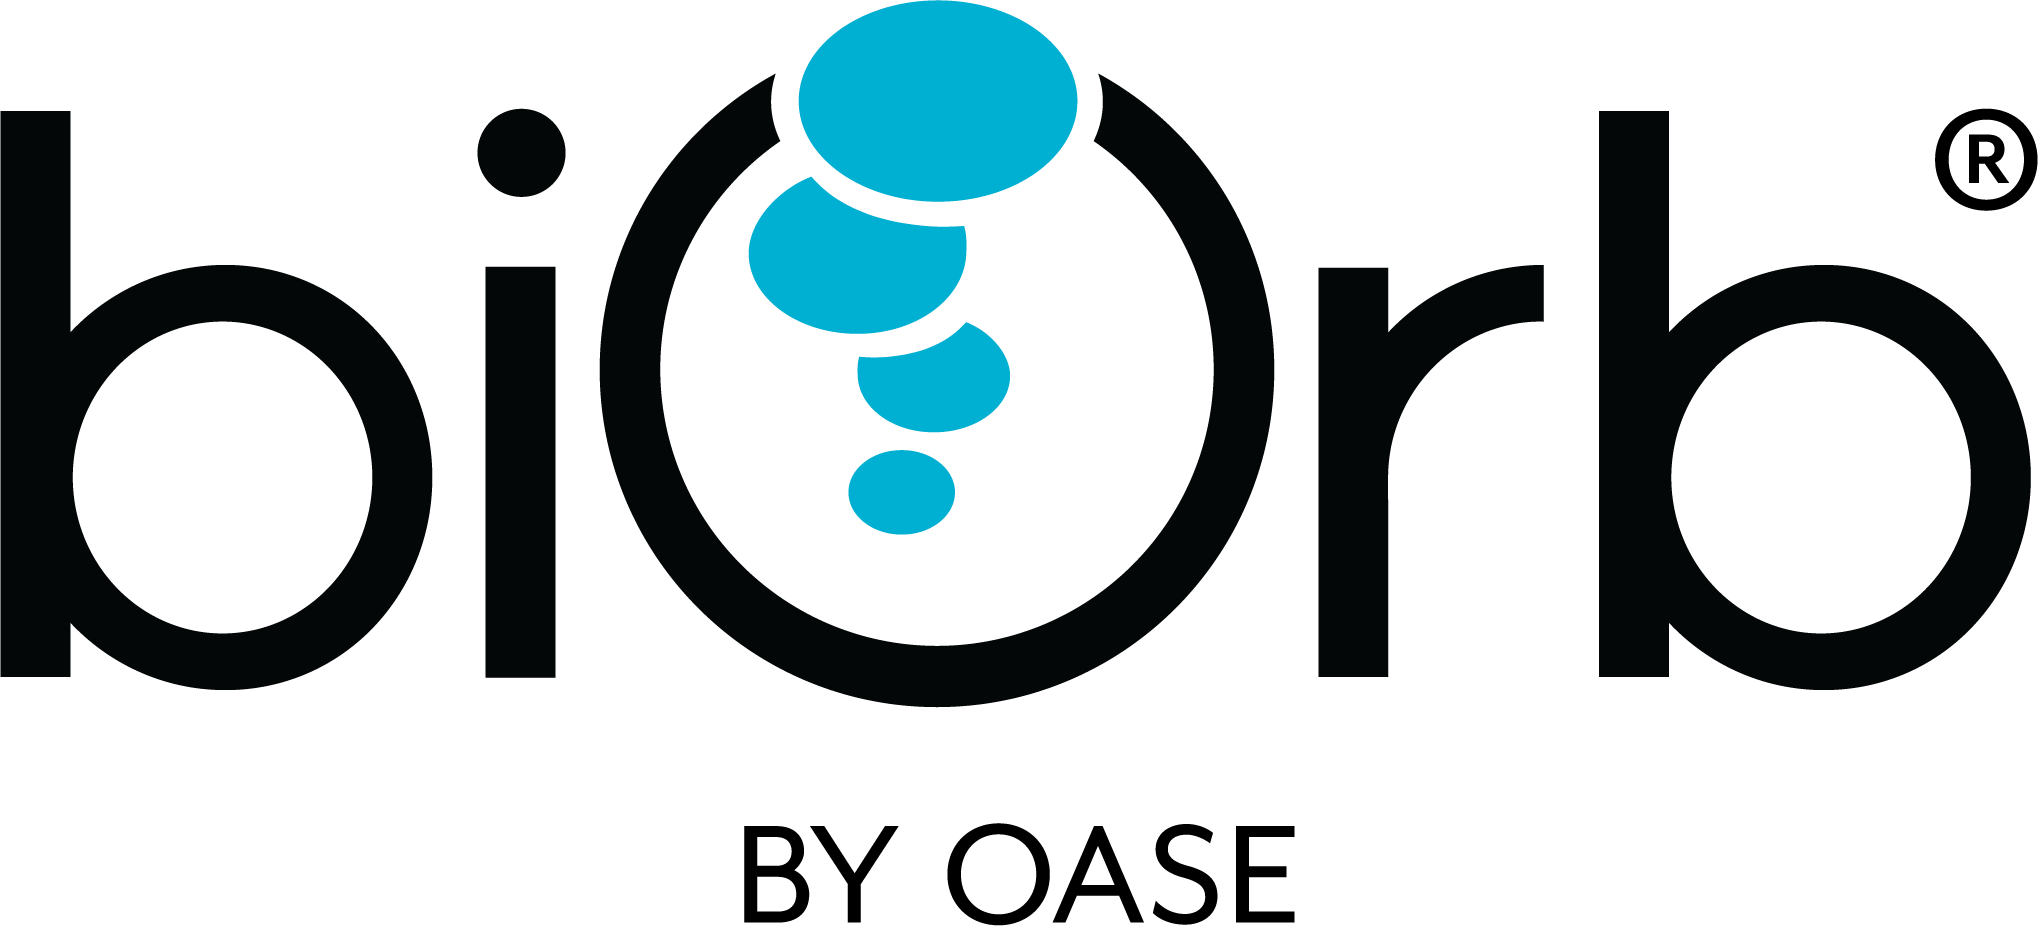 biorb-logo.png